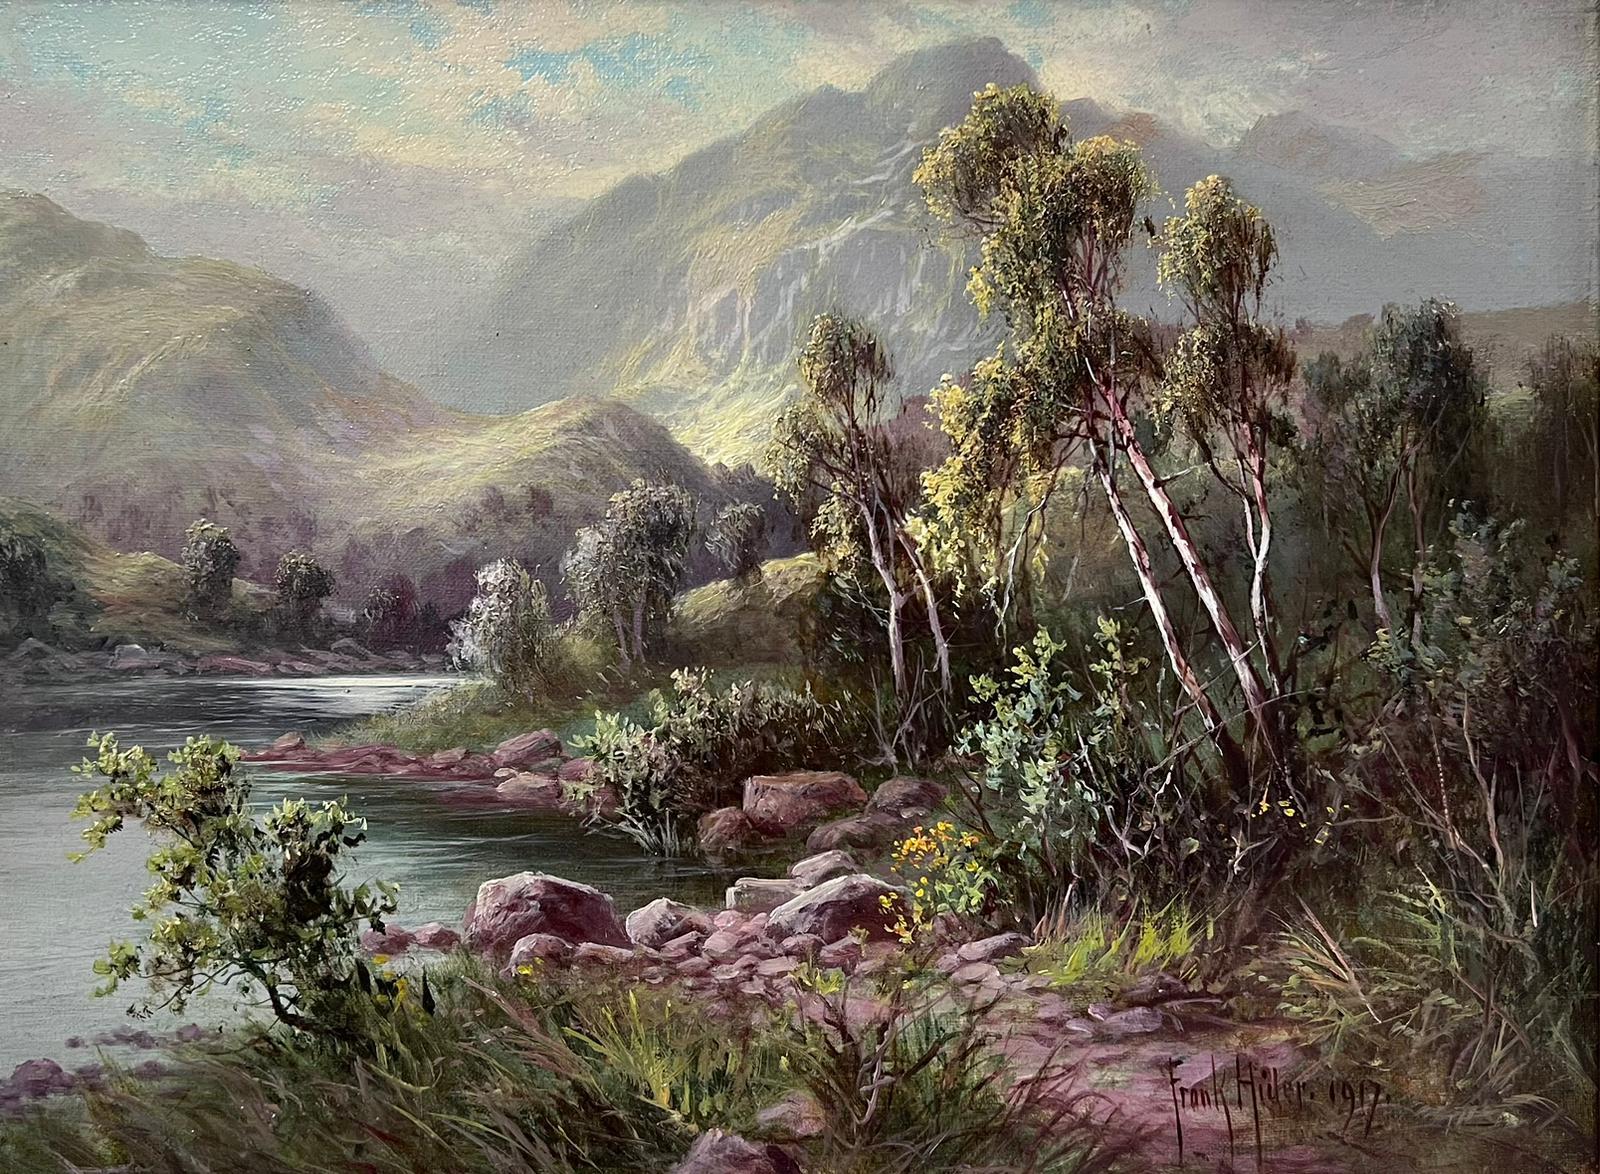 Landscape Painting Frank Hider - L'été dans les Highlands écossais 1917 - Peinture à l'huile originale de l'artiste répertorié